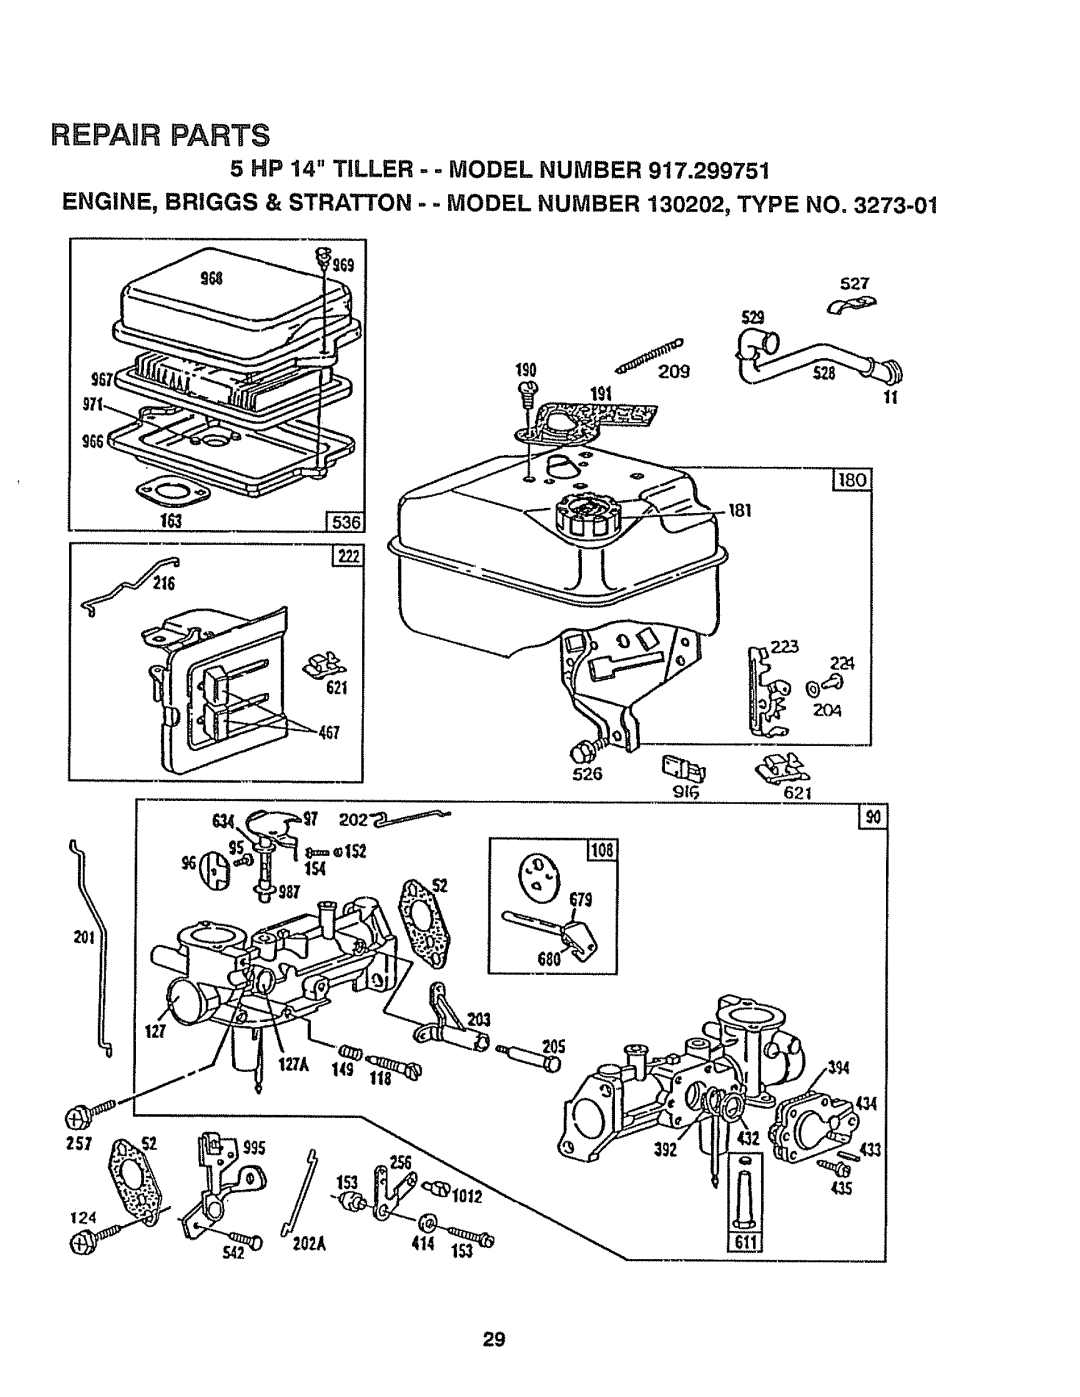 Craftsman 917-299751 owner manual 12zA, Repair Parts, 5 HP 14 TILLER - - MODEL NUMBER 